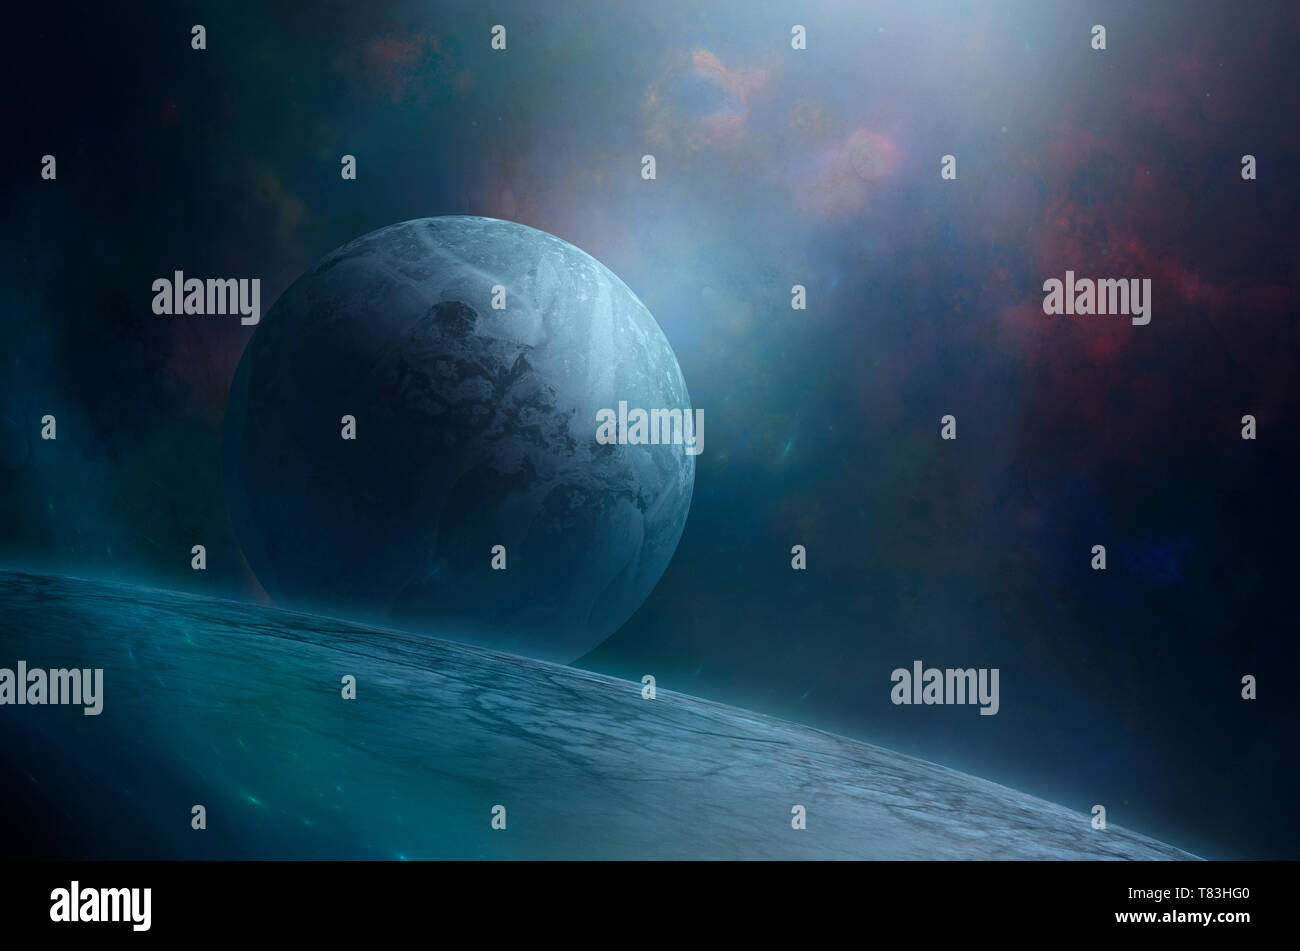 Blue Moon Rising über gigantische Cold Ice Planet im Weltraum. Geheimnisvolle sci-fi Raum Abbildung: Kalte gefrorene Welt Stockfoto